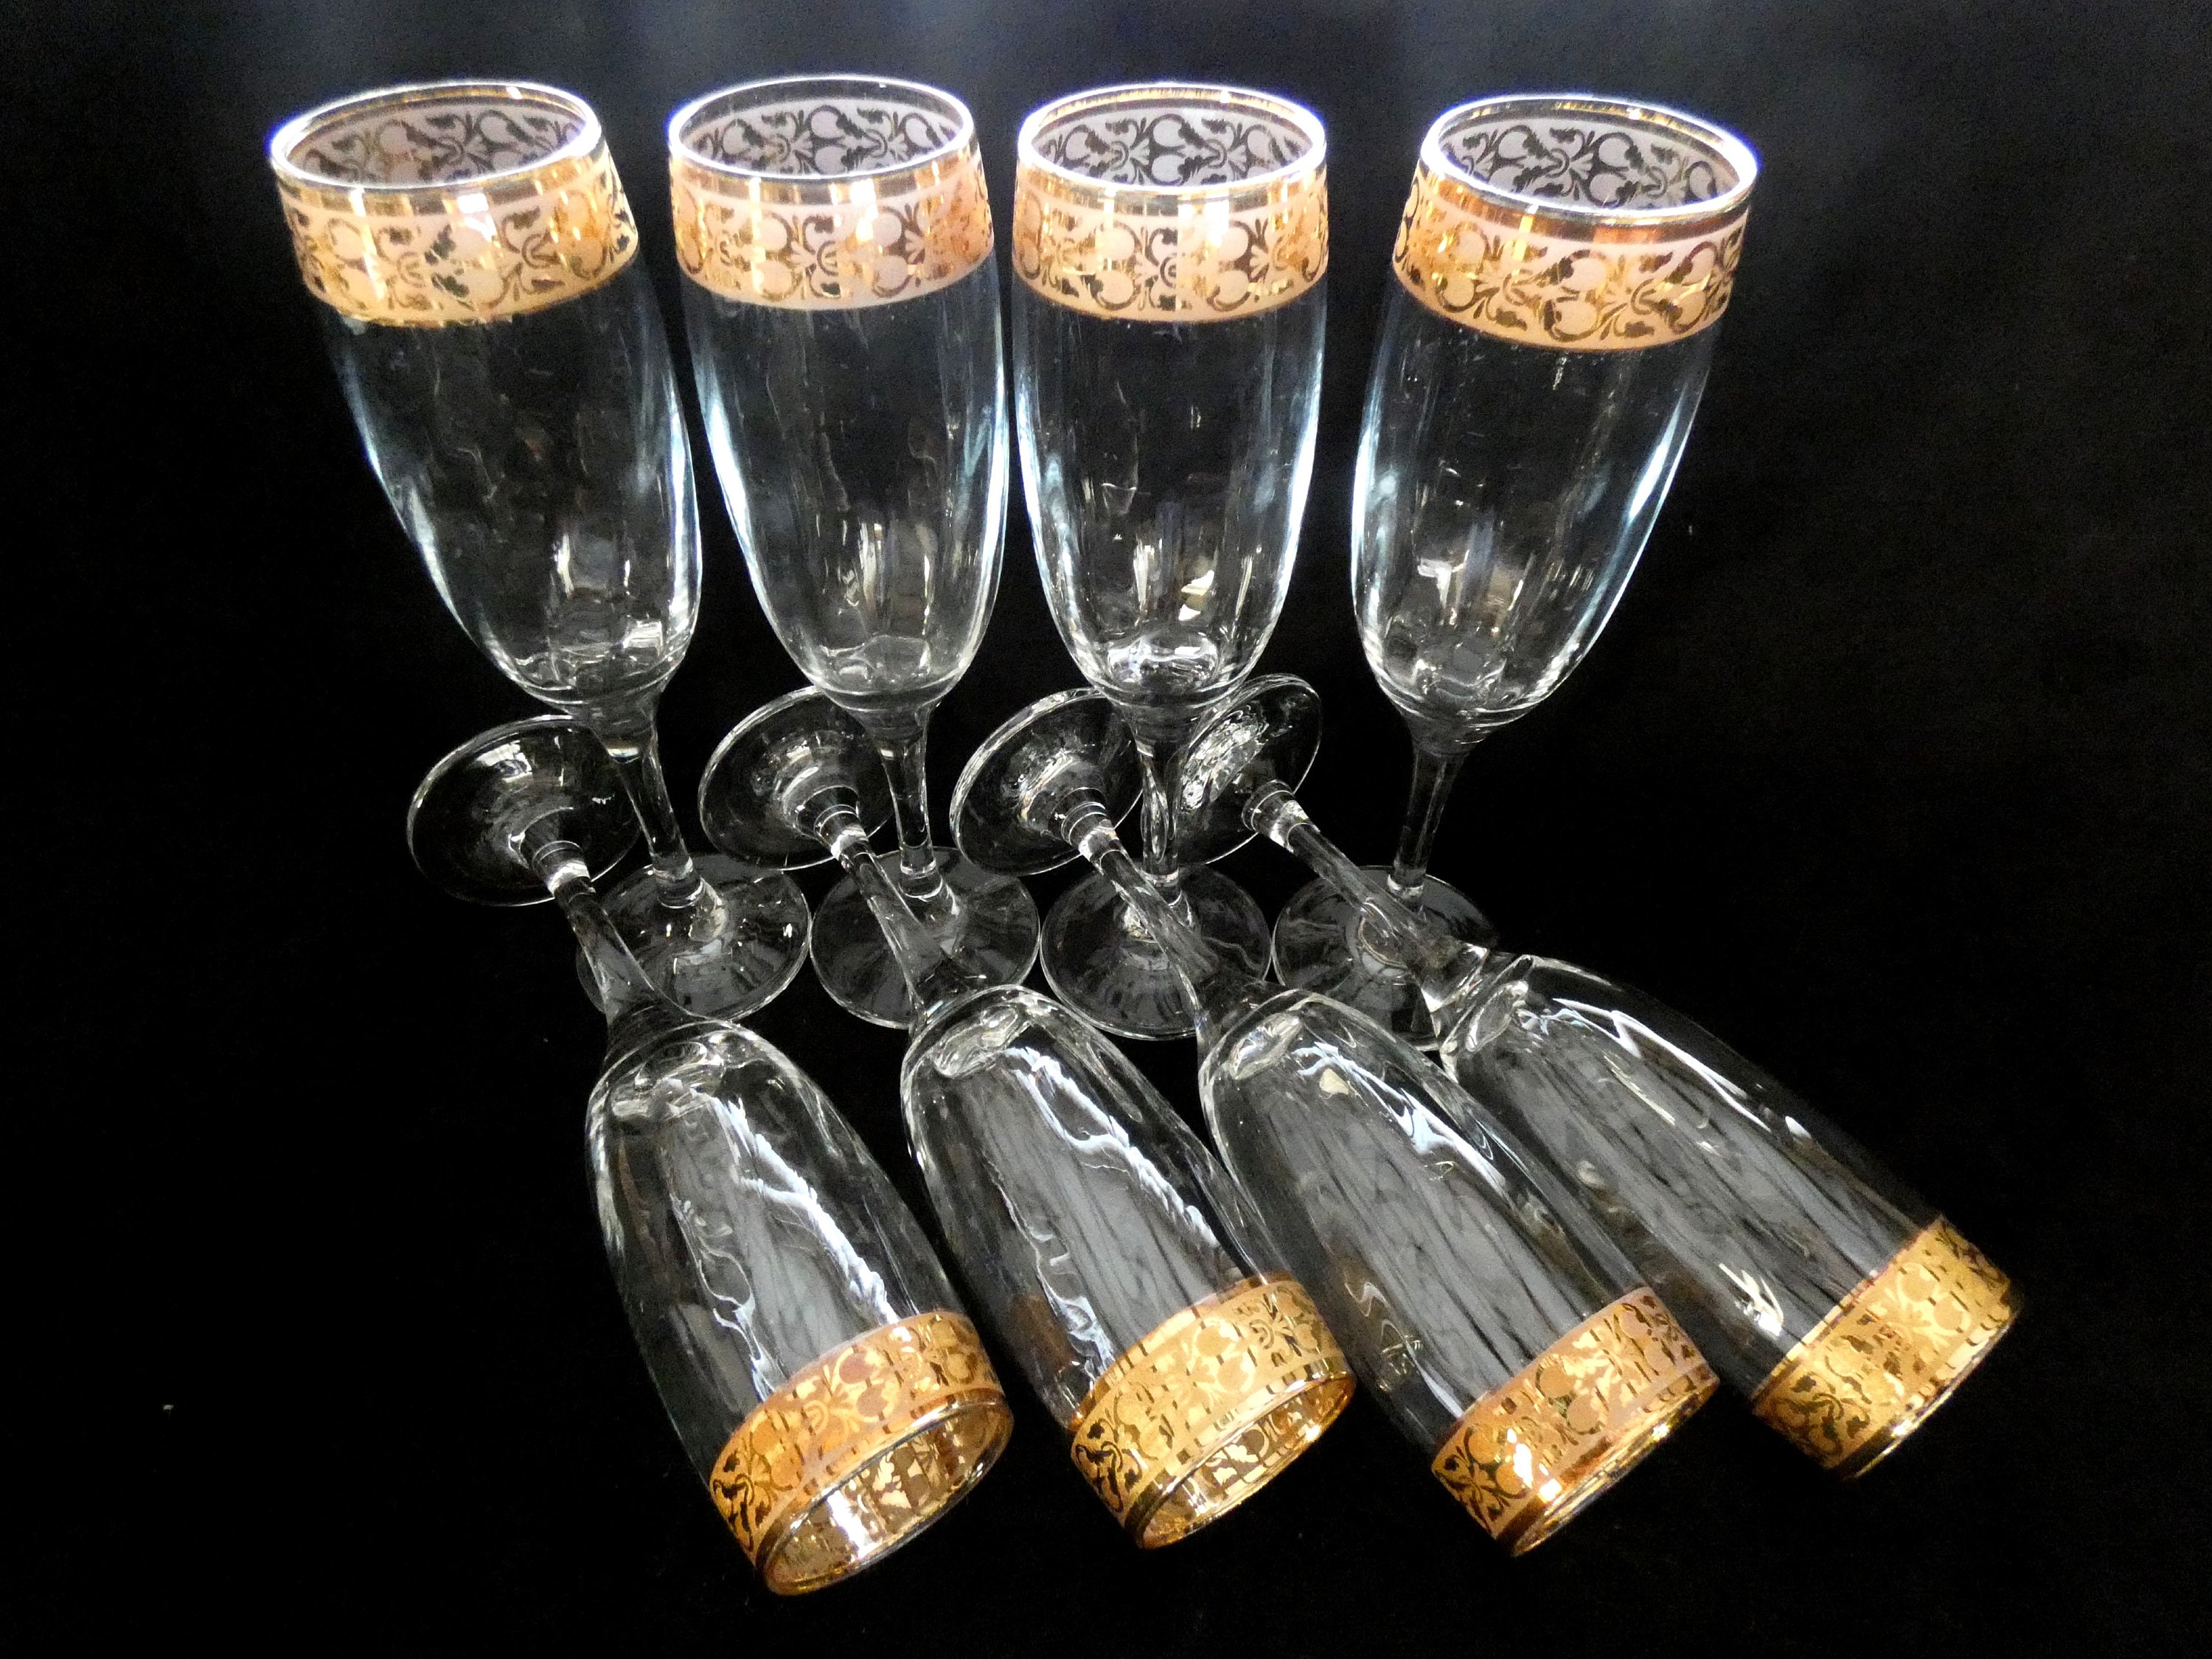 Vintage Crystal Champagne Flutes